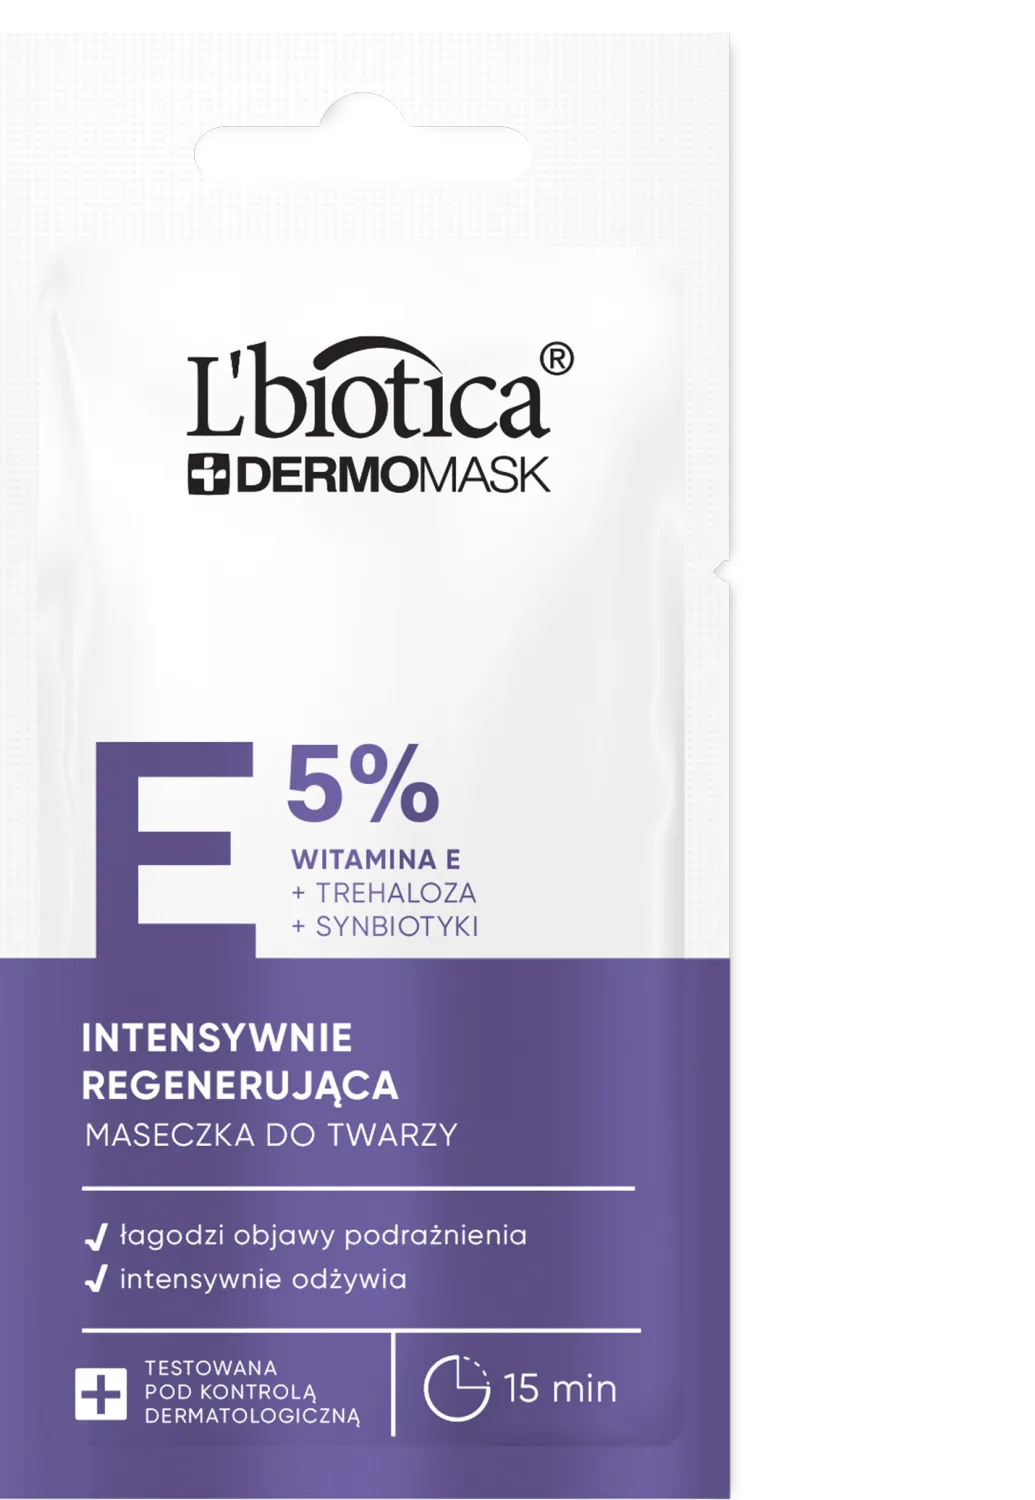 L'biotica Dermomask intensywnie regenerująca maska z witaminą E,  8 ml 